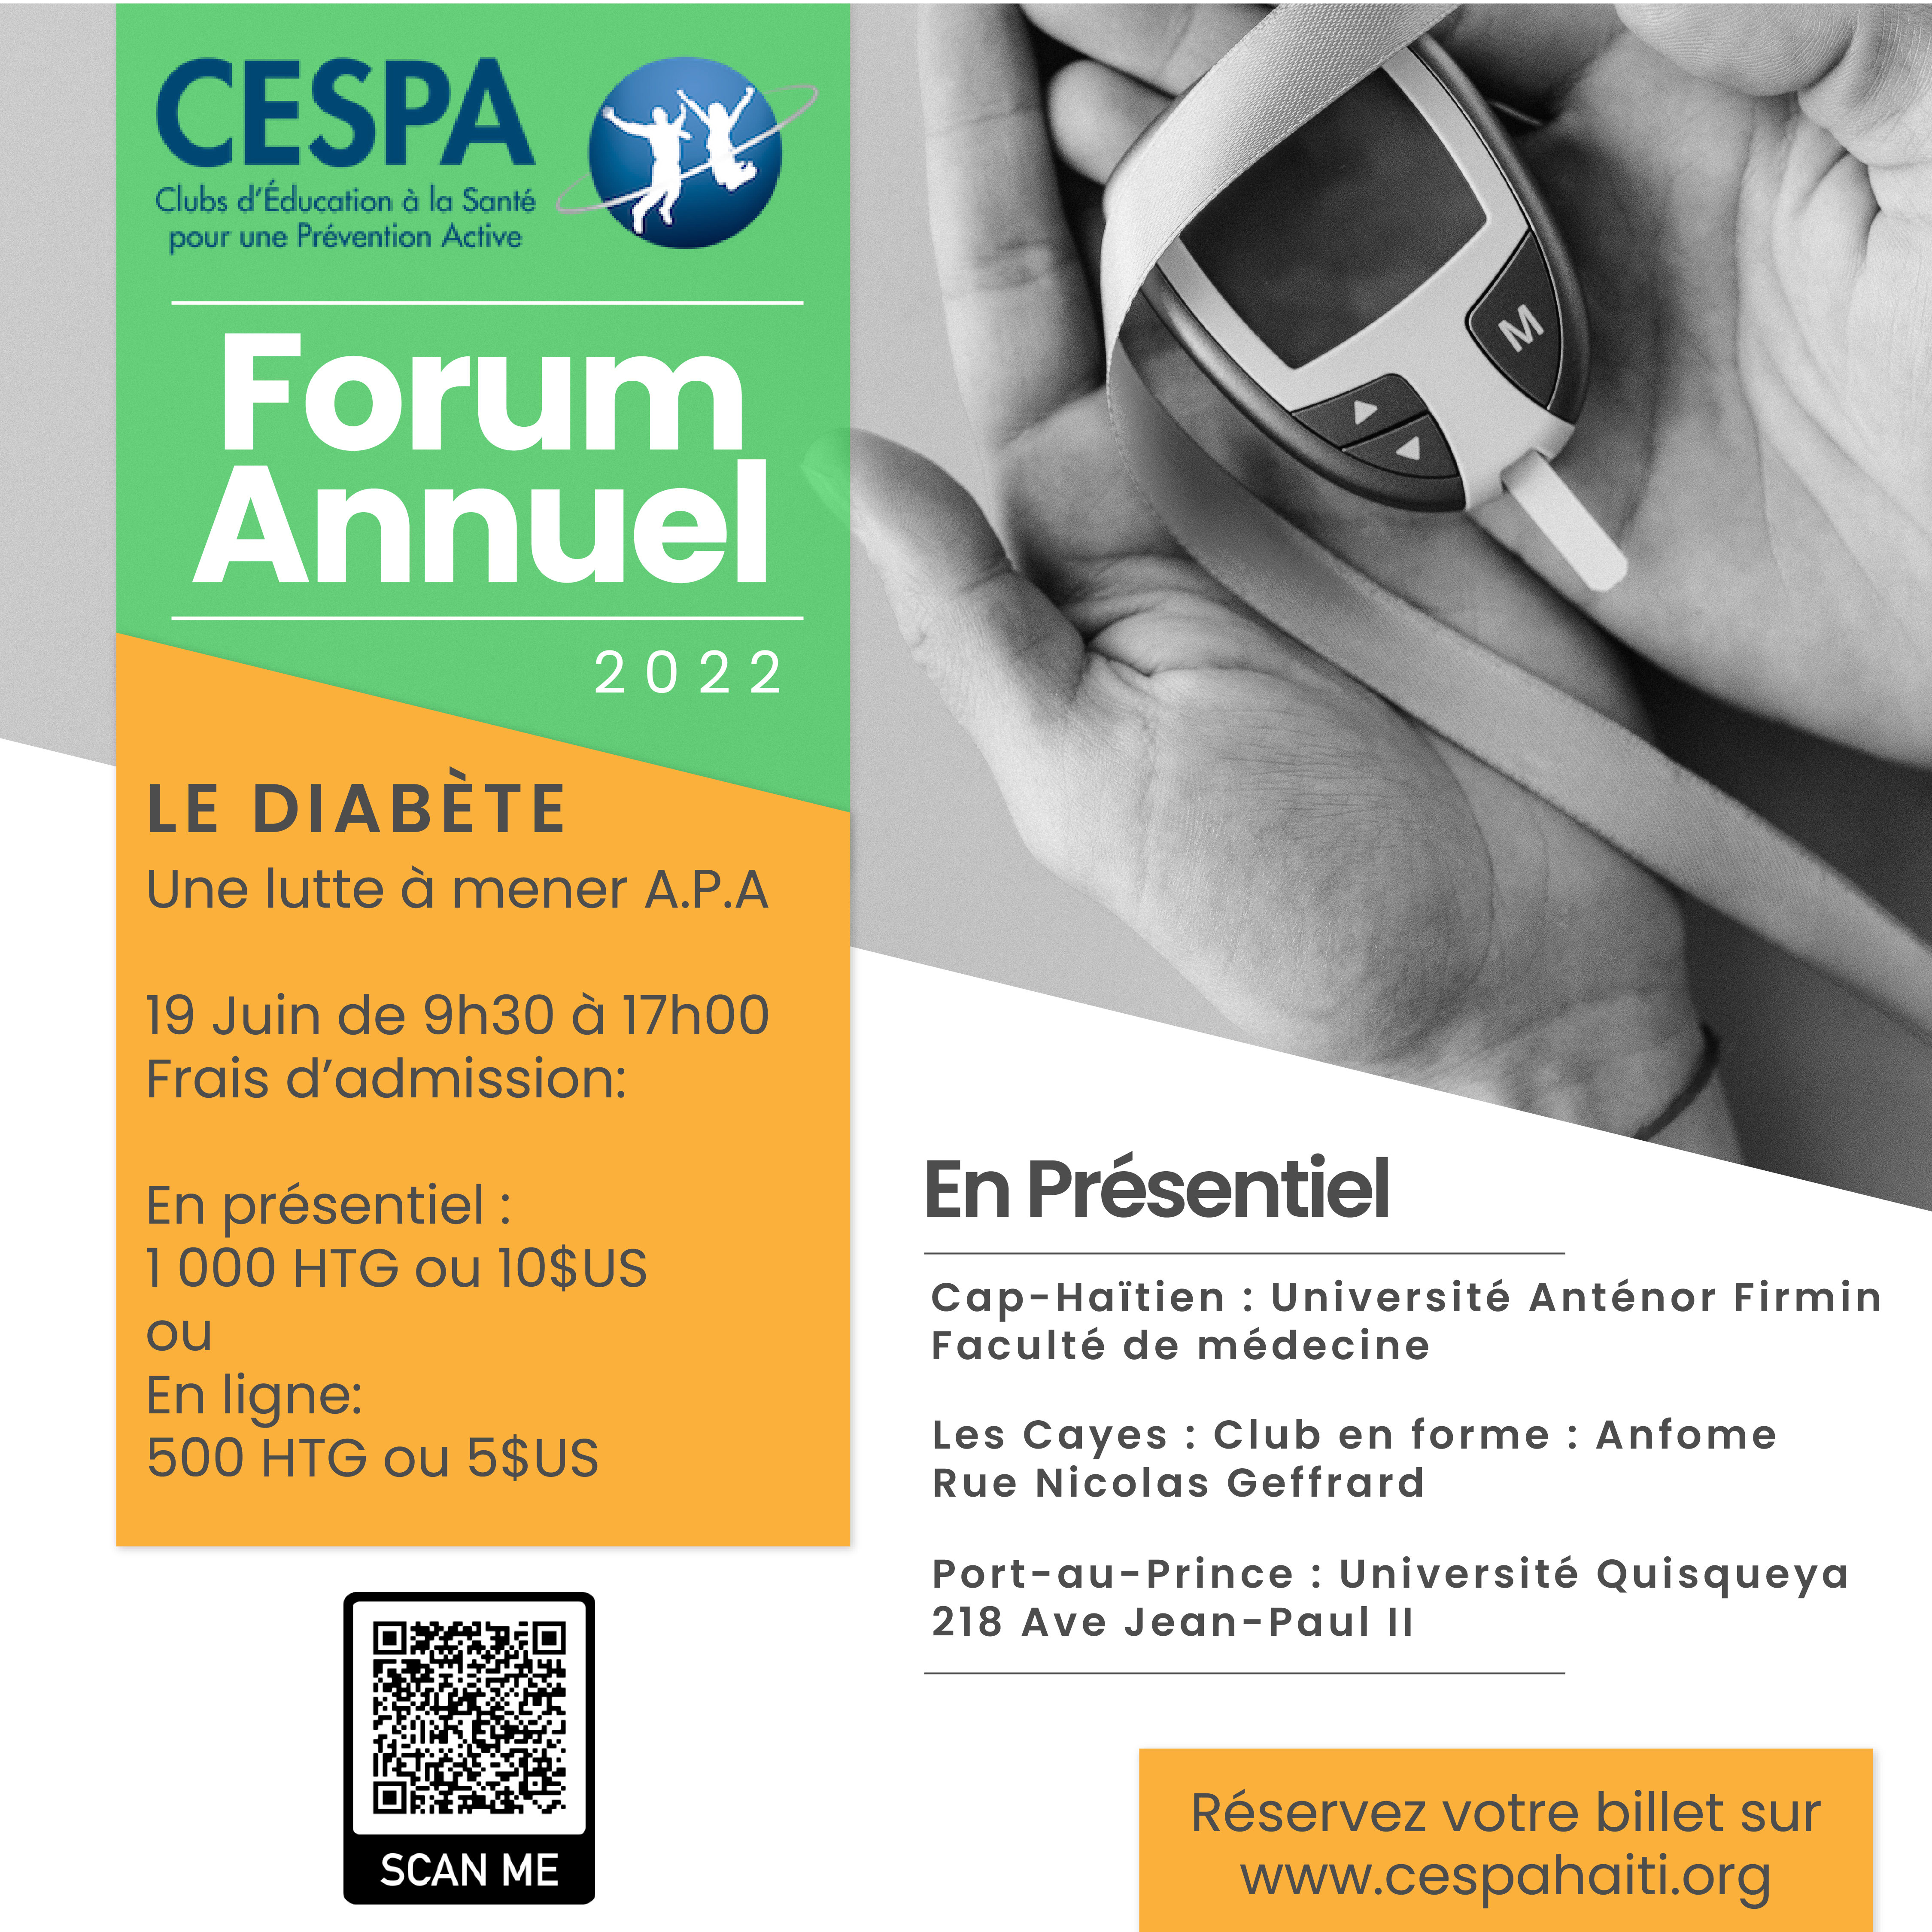 Forum Annuel 2022 : Le Diabète